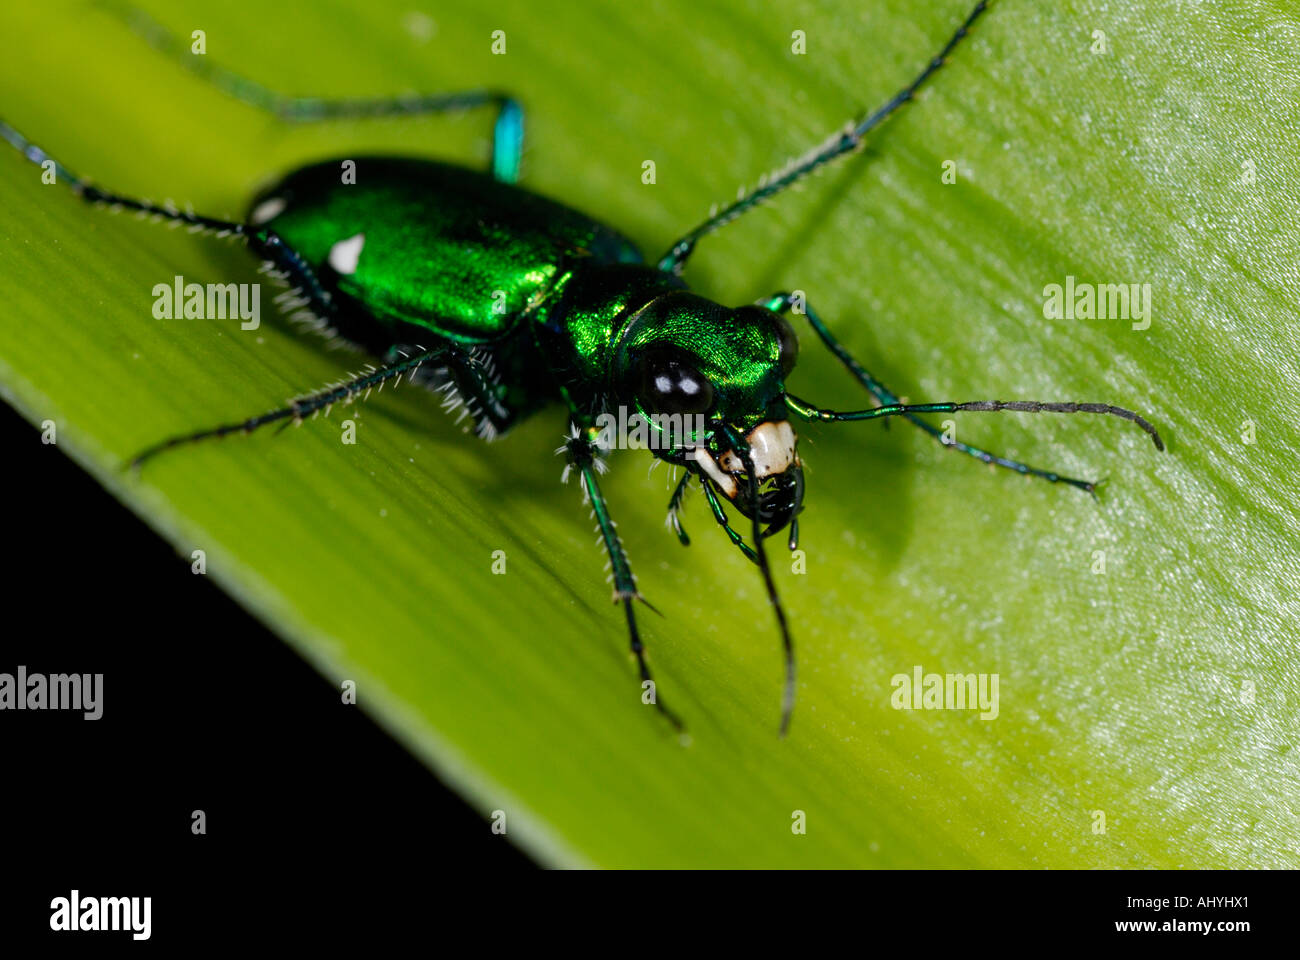 Escarabajo verde 'Tigre' Cicindela sexguttata, sobre hojas verdes Foto de stock